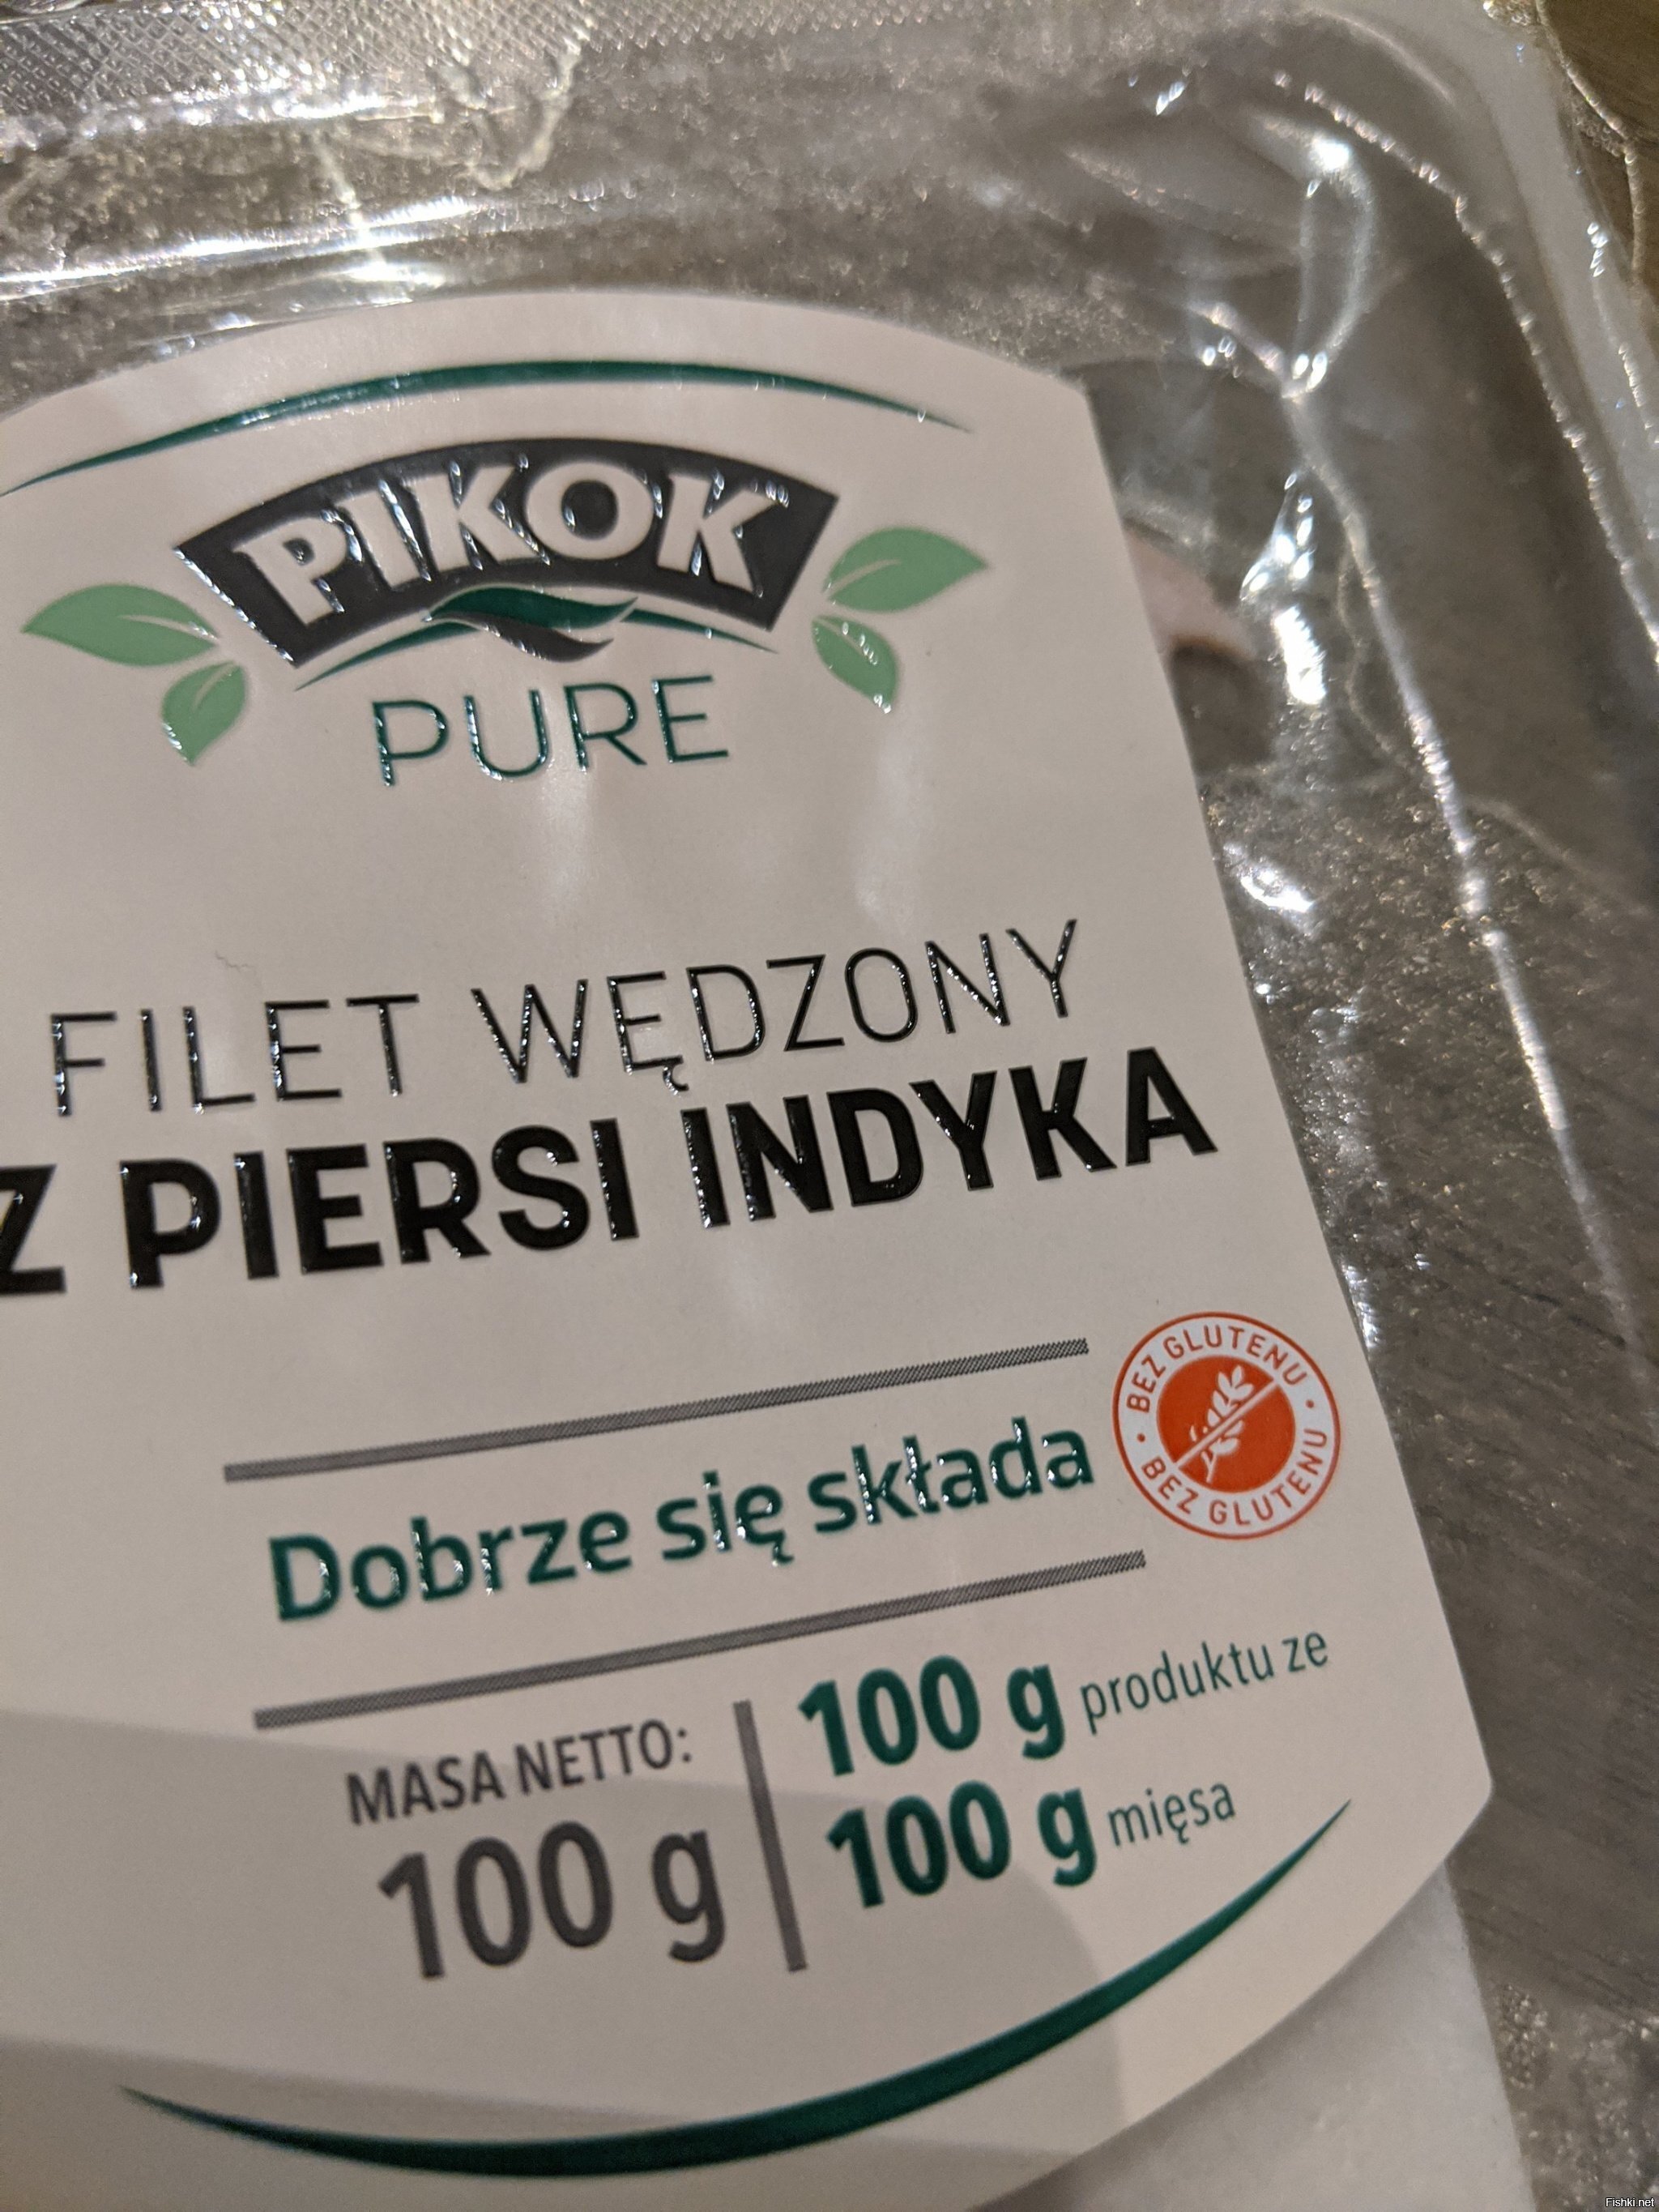 Секрет вкусной колбасы от поляков: 100г мяса на 100г продукта: